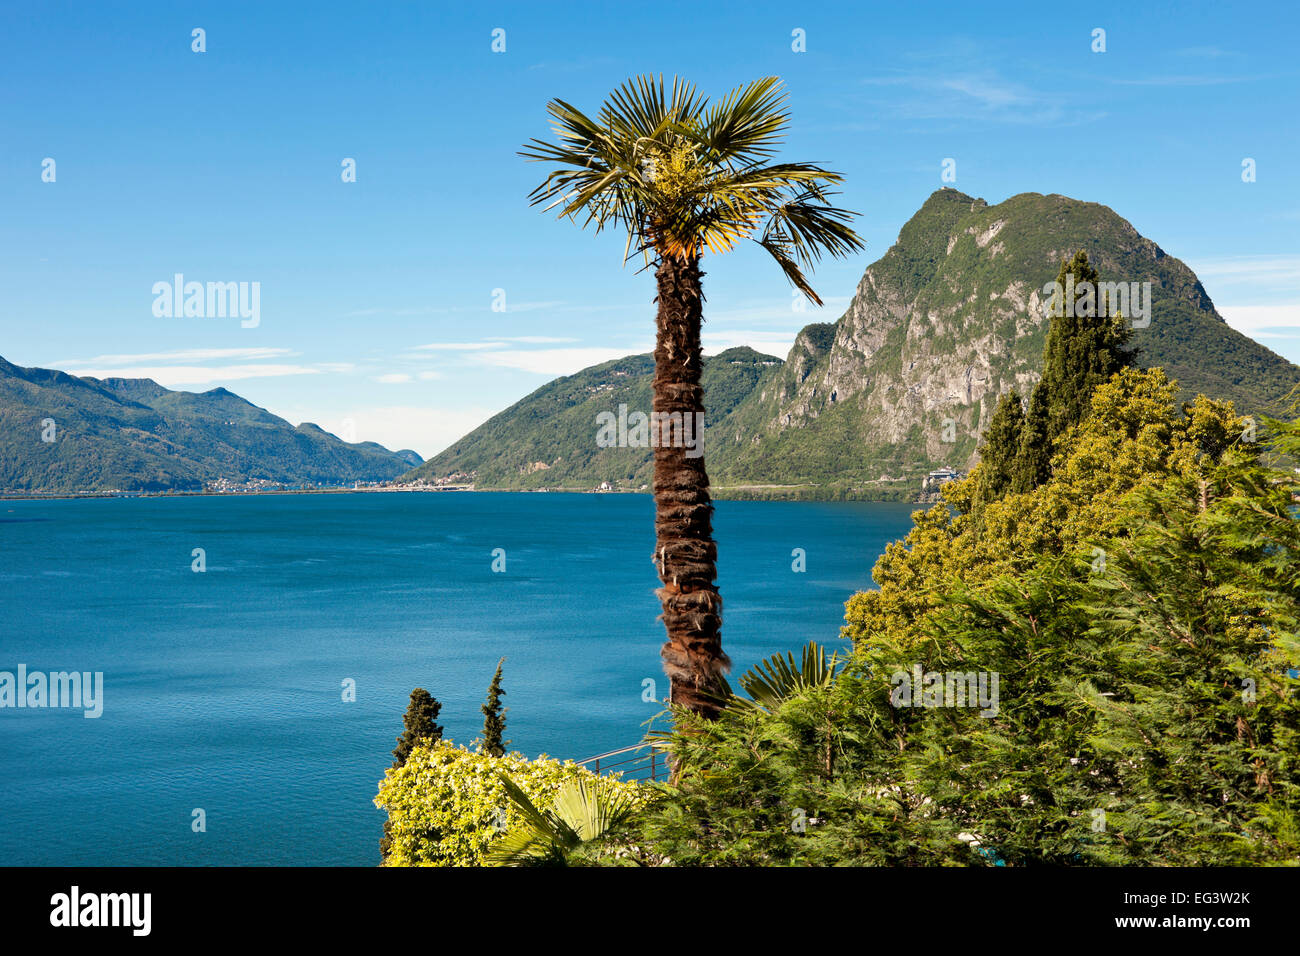 Le lac de Lugano, Suisse Banque D'Images